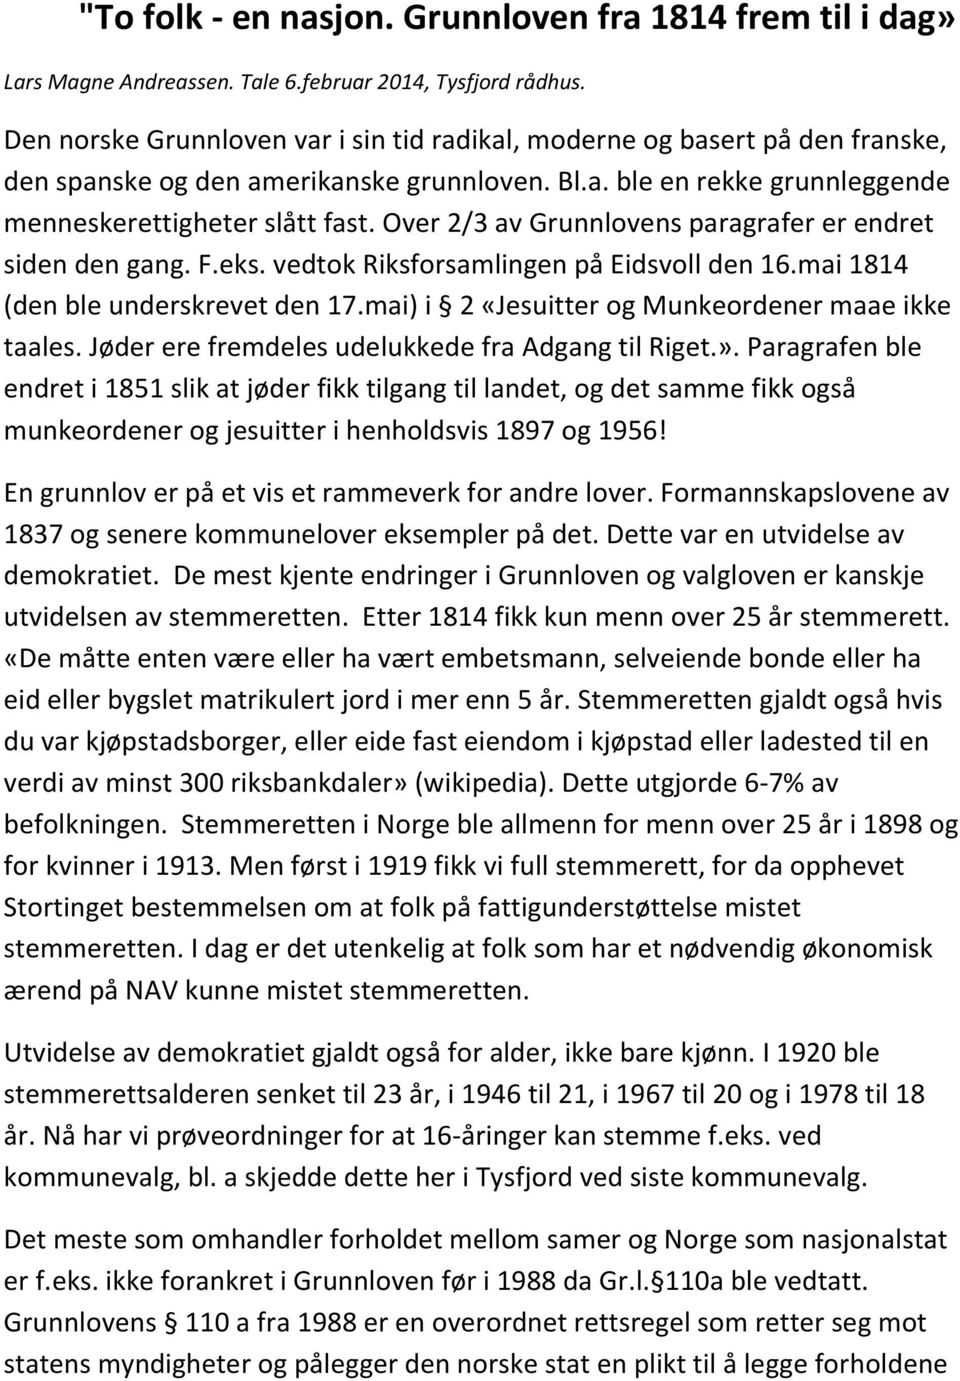 Over 2/3 av Grunnlovens paragrafer er endret siden den gang. F.eks. vedtok Riksforsamlingen på Eidsvoll den 16.mai 1814 (den ble underskrevet den 17.